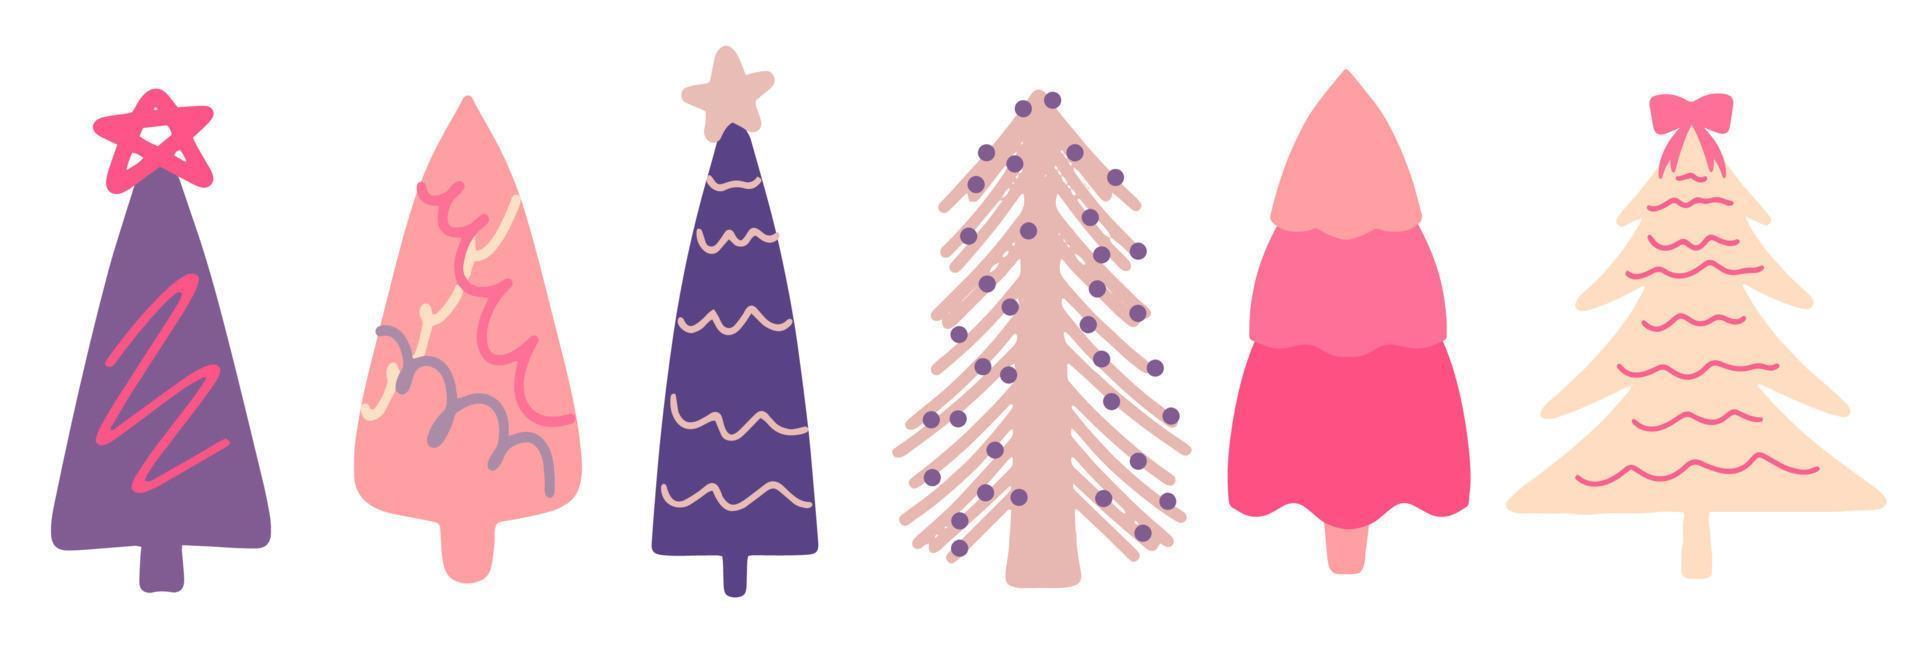 collezione di alberi di natale e abeti, design piatto moderno. una serie di insoliti alberi di Natale colorati. rosa, lilla, beige. per prodotti stampati - volantini, poster, biglietti da visita o per il web. vettore